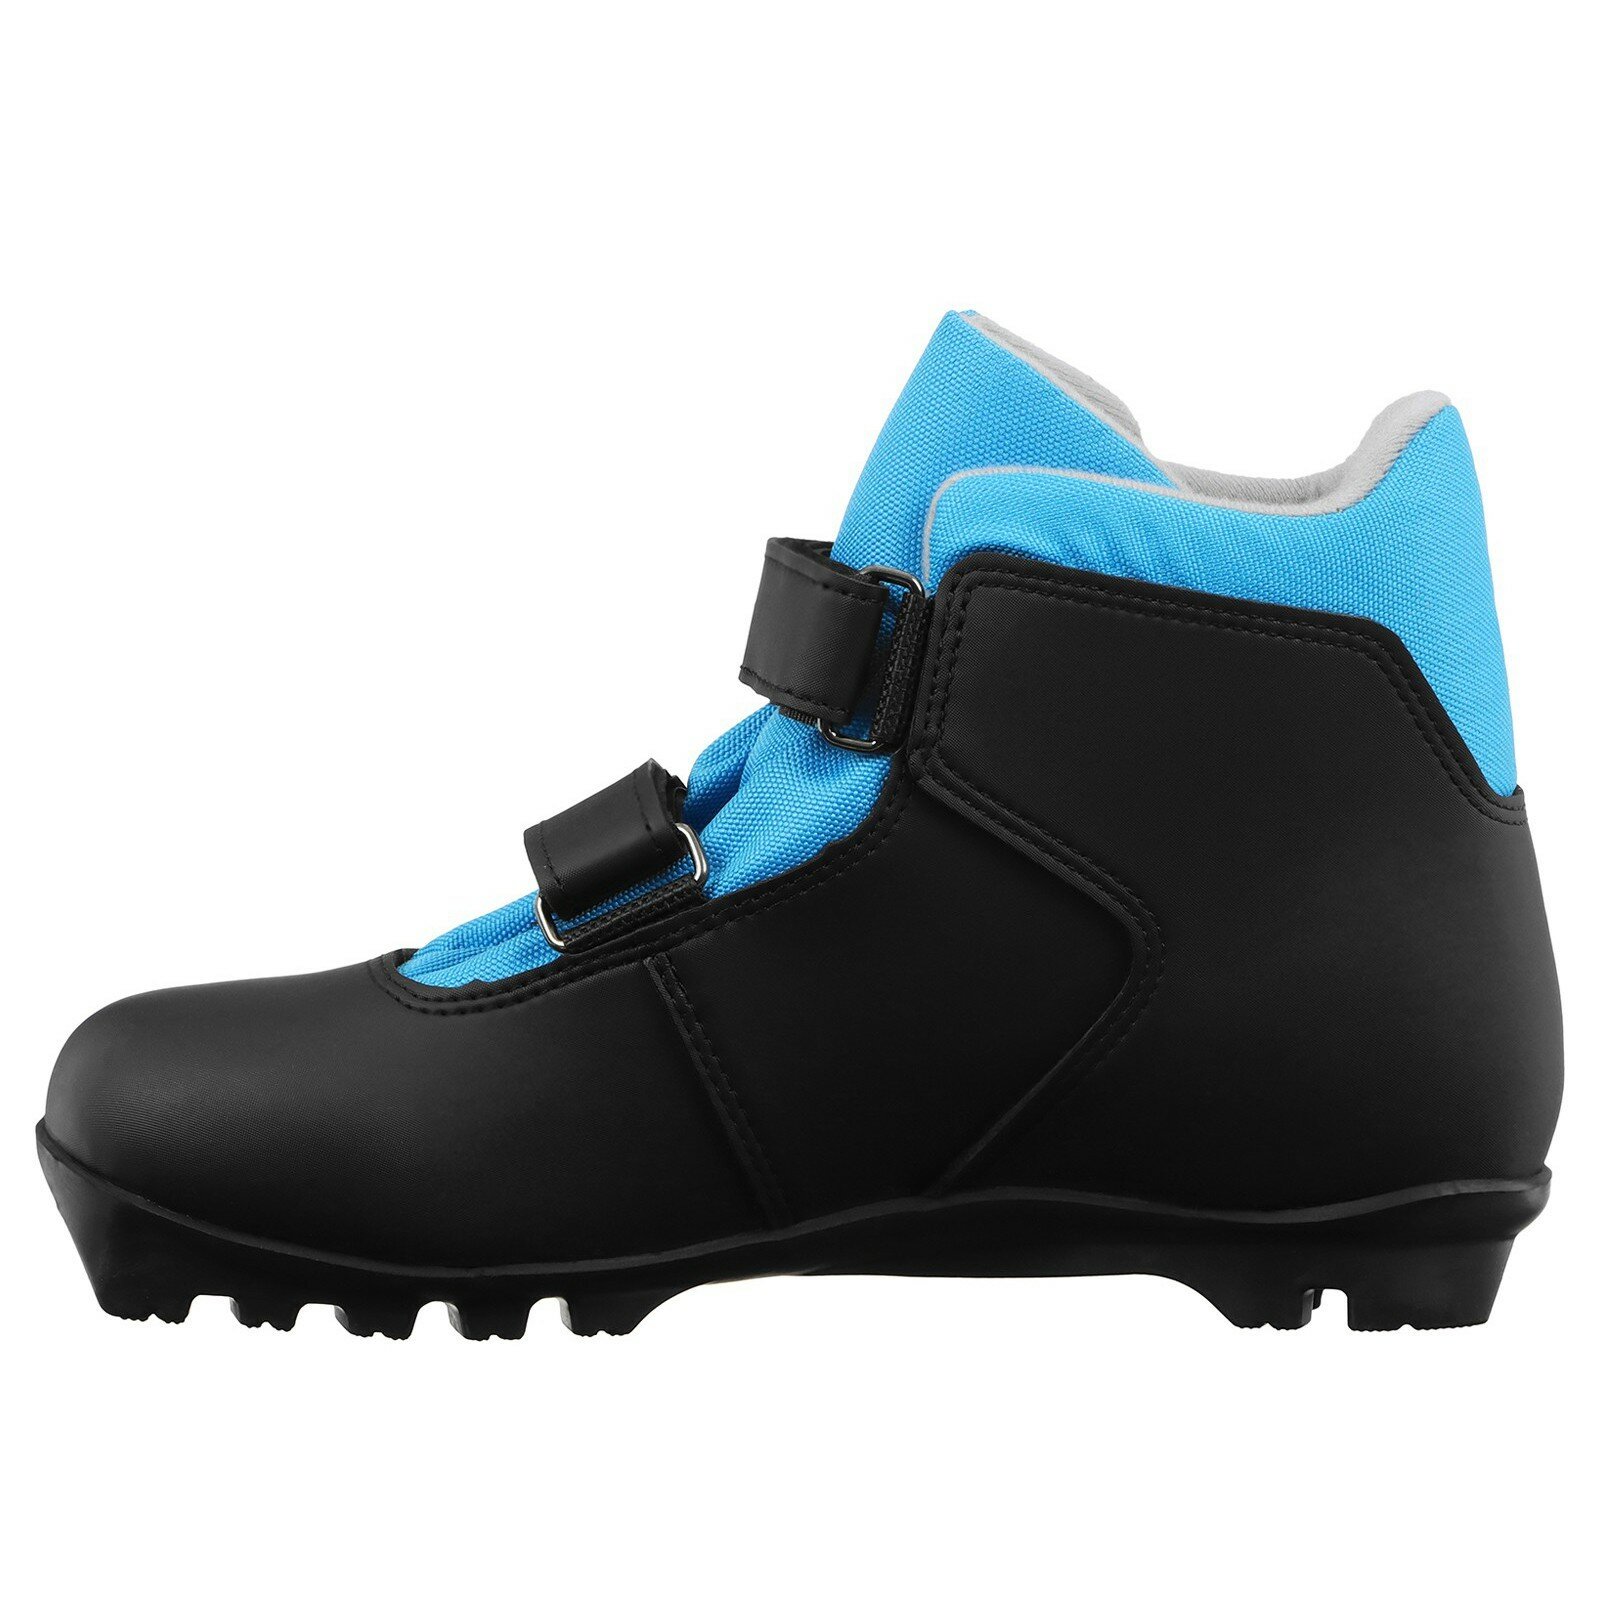 Ботинки лыжные детские Winter Star control kids, NNN, размер 41, цвет чёрный, синий